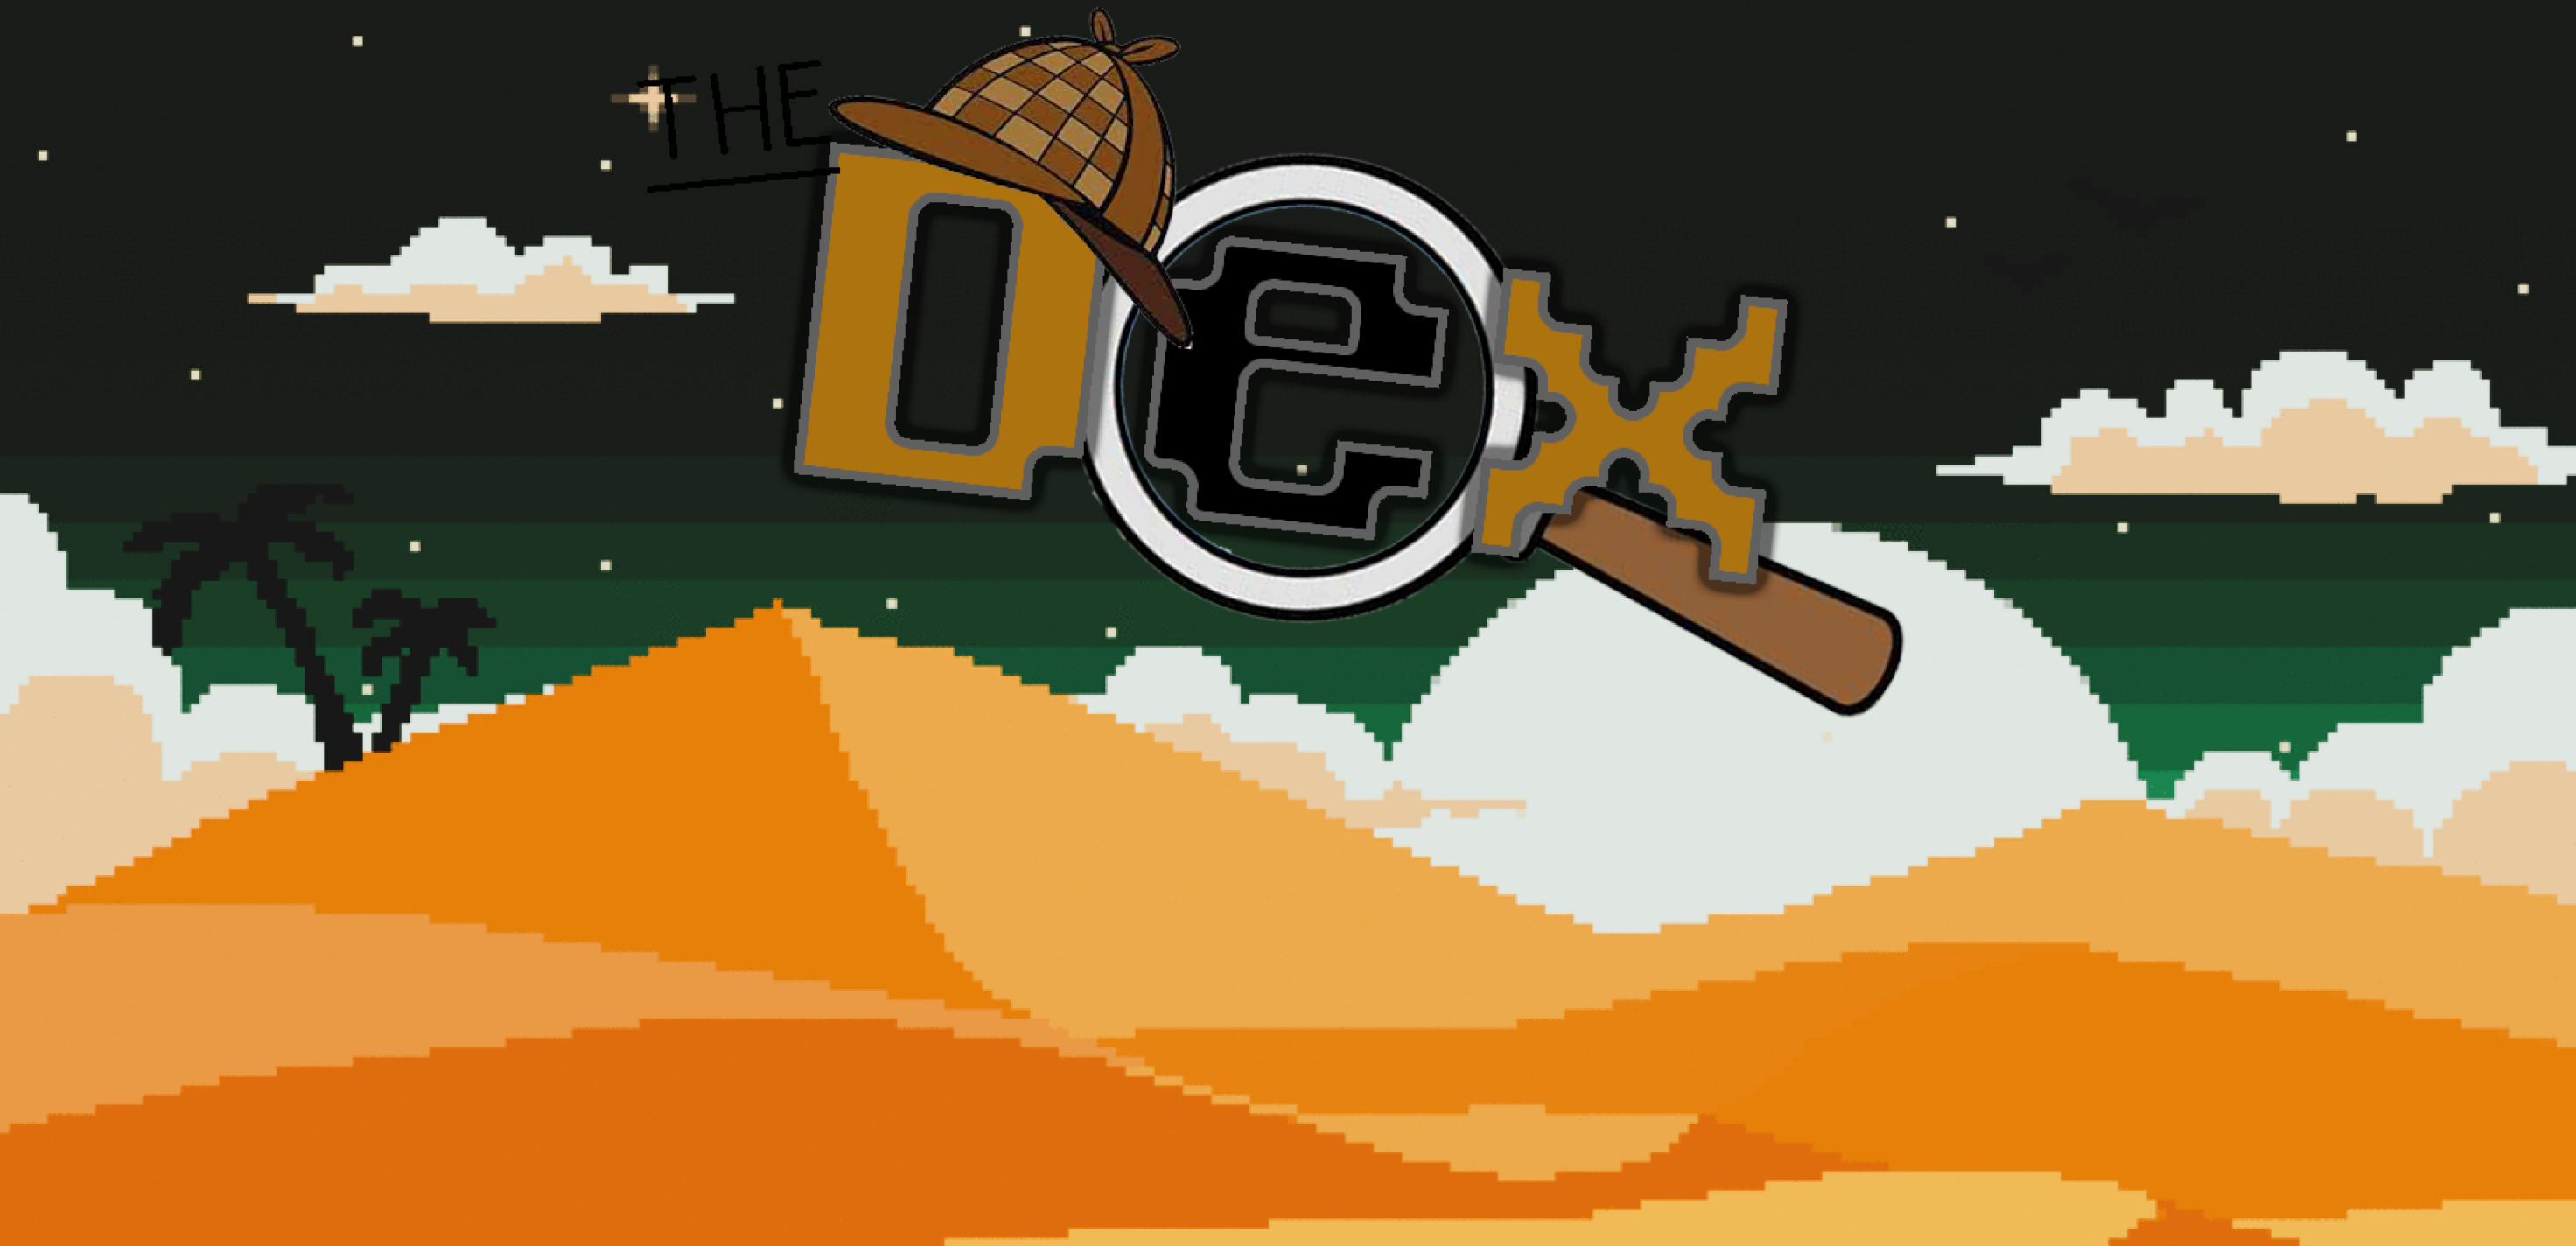 The Dex